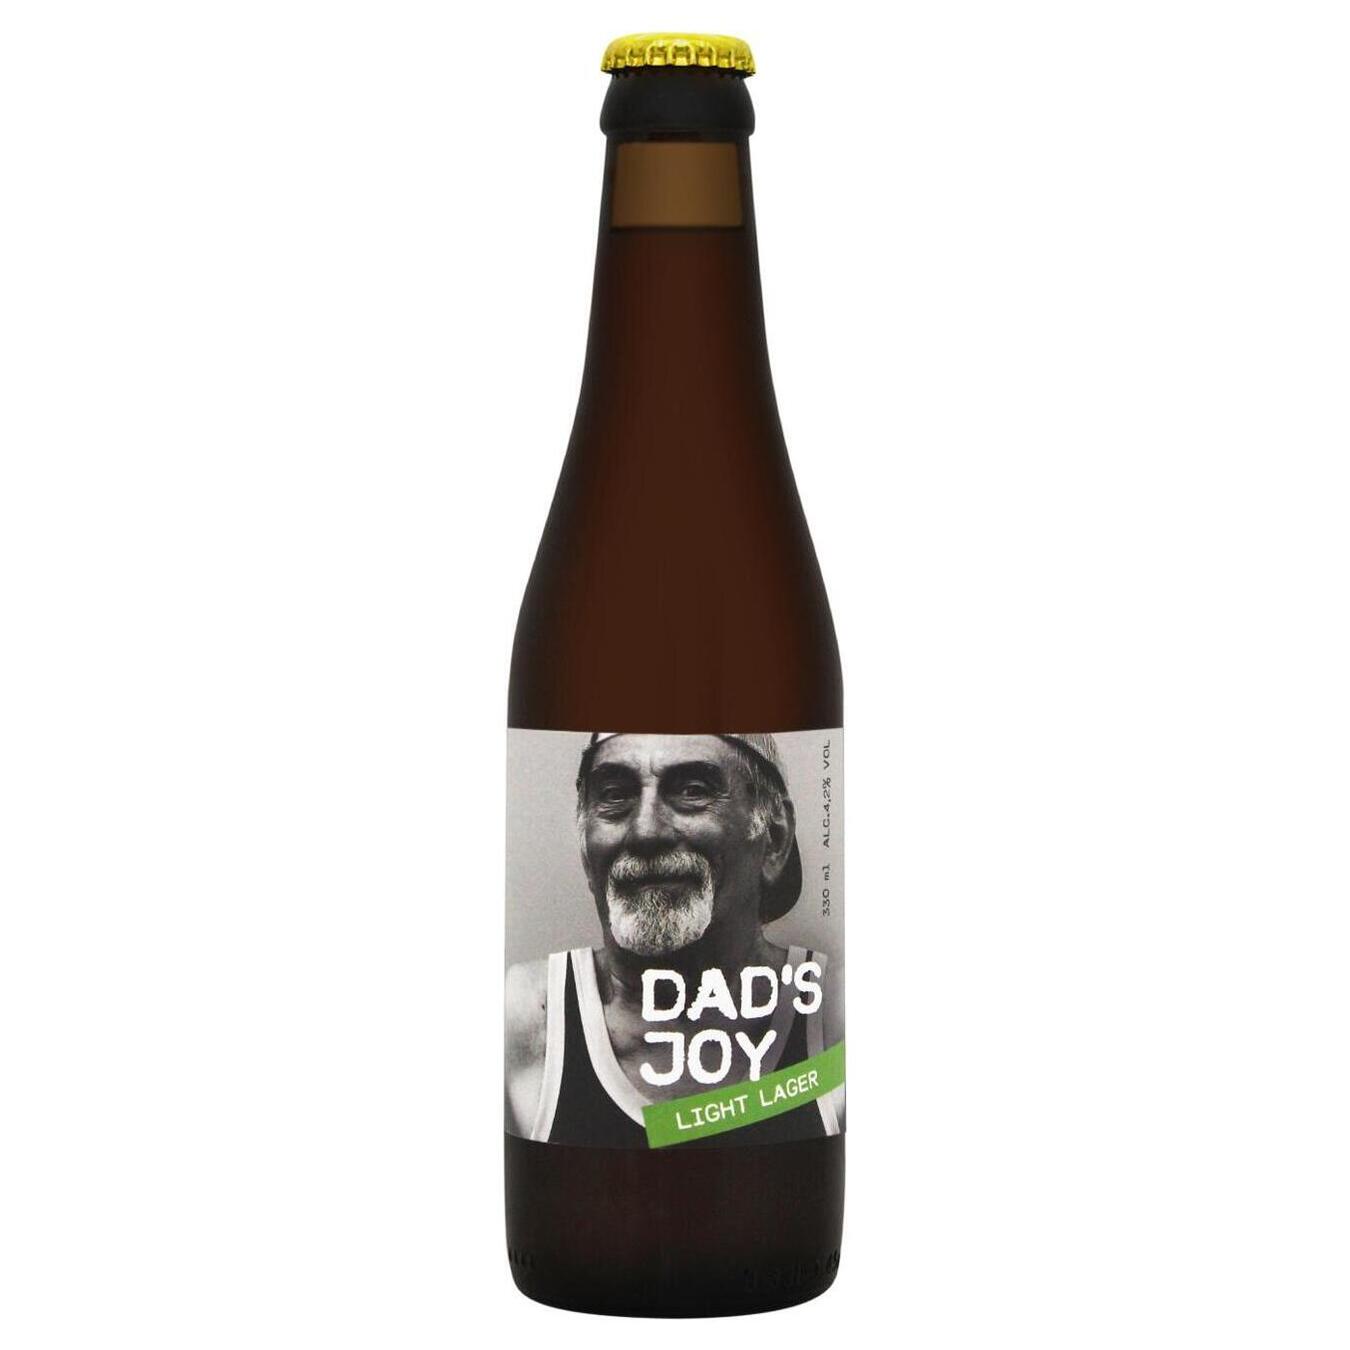 Light beer DAD'S JOY Light lager, 4.2%, 0.33l glass